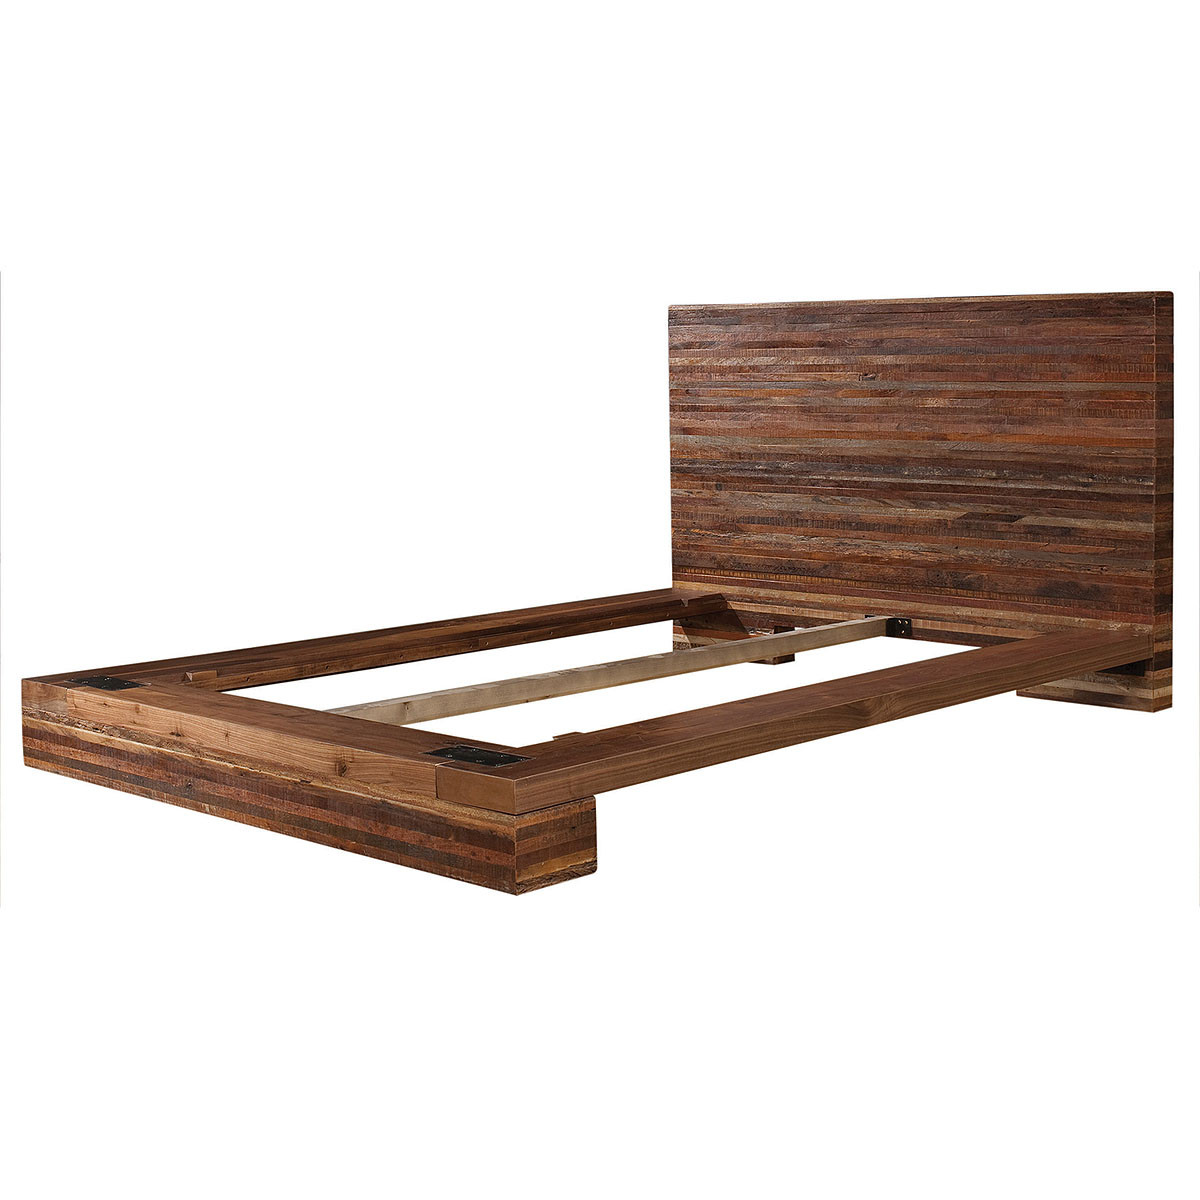 Solid Wood Platform Beds | Wood Platform Bed Frames Seattle